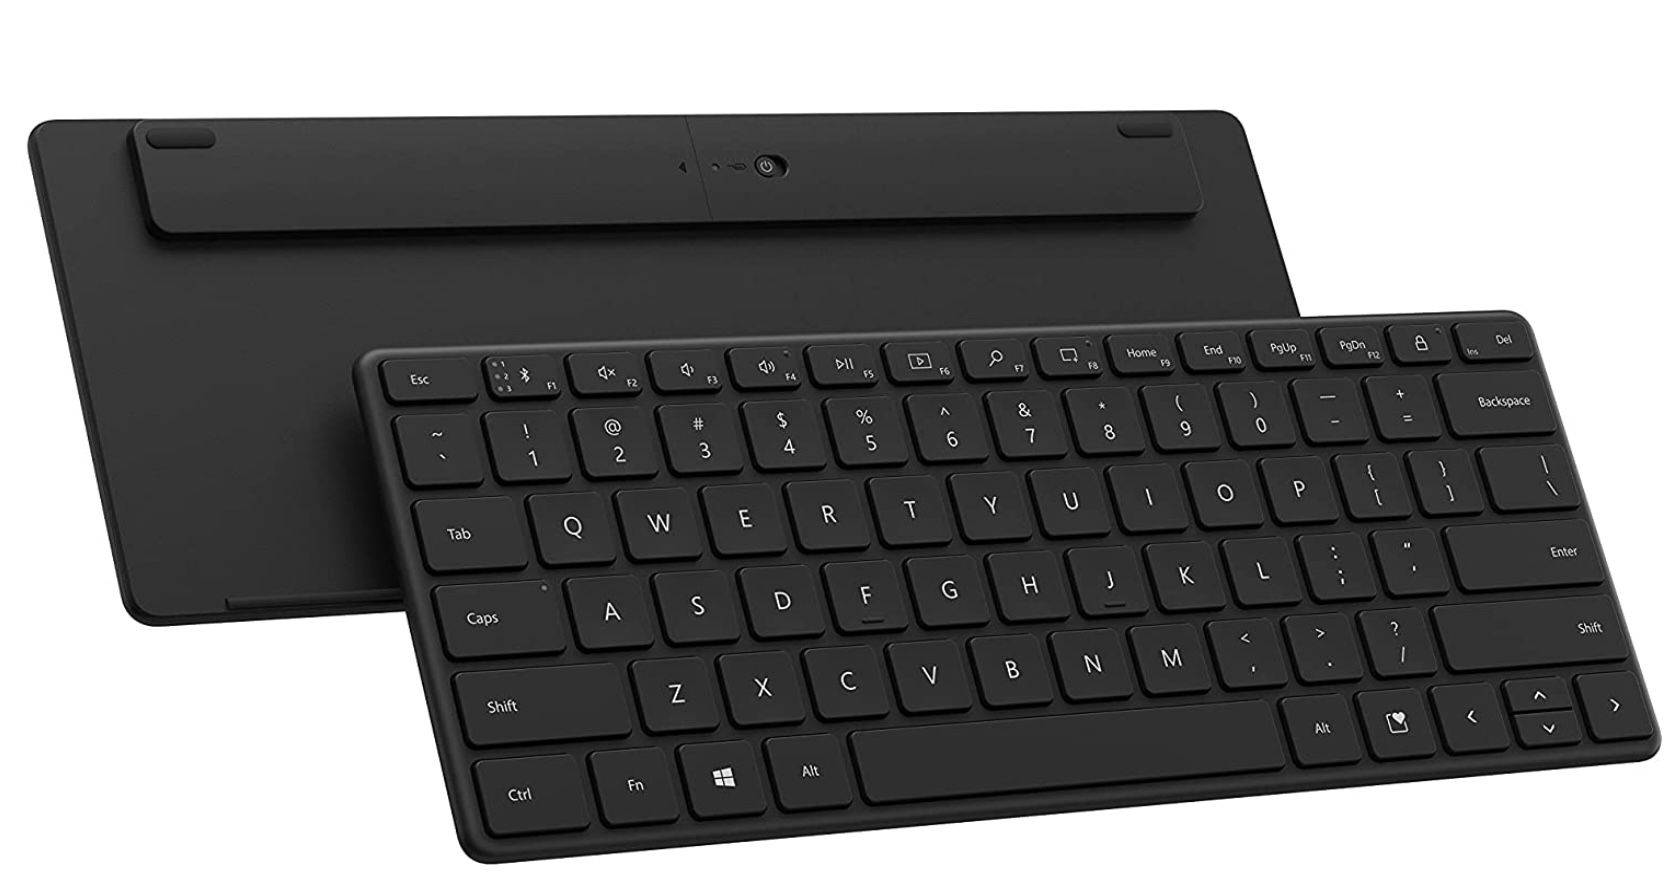 Microsoft Designer Compact QWERTZ Keyboard in Schwarz für 35,39€ (statt 49€)